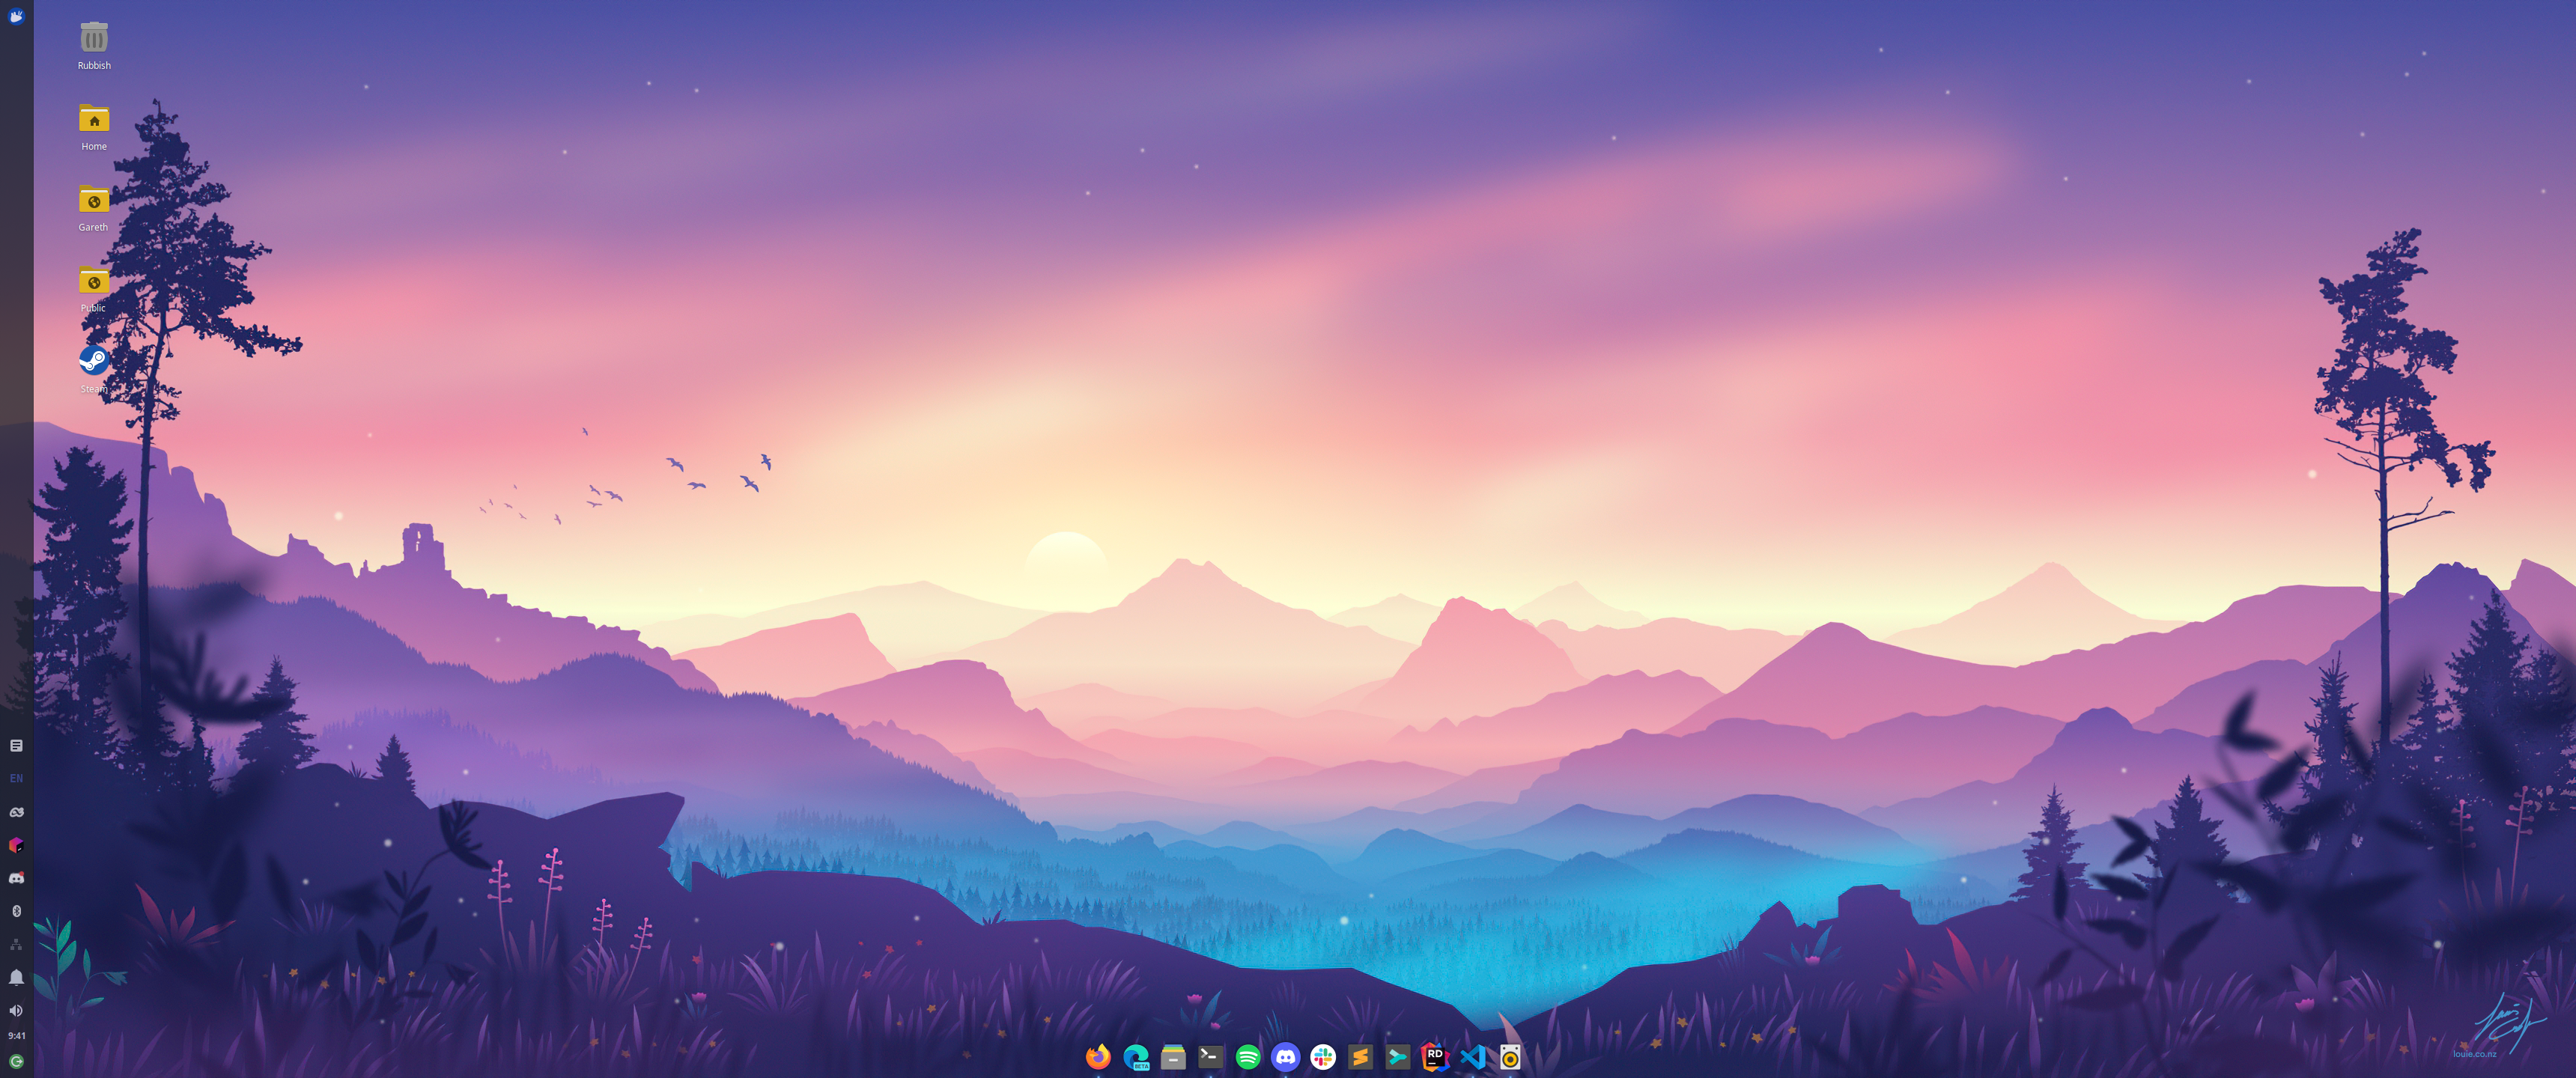 XFCE Desktop